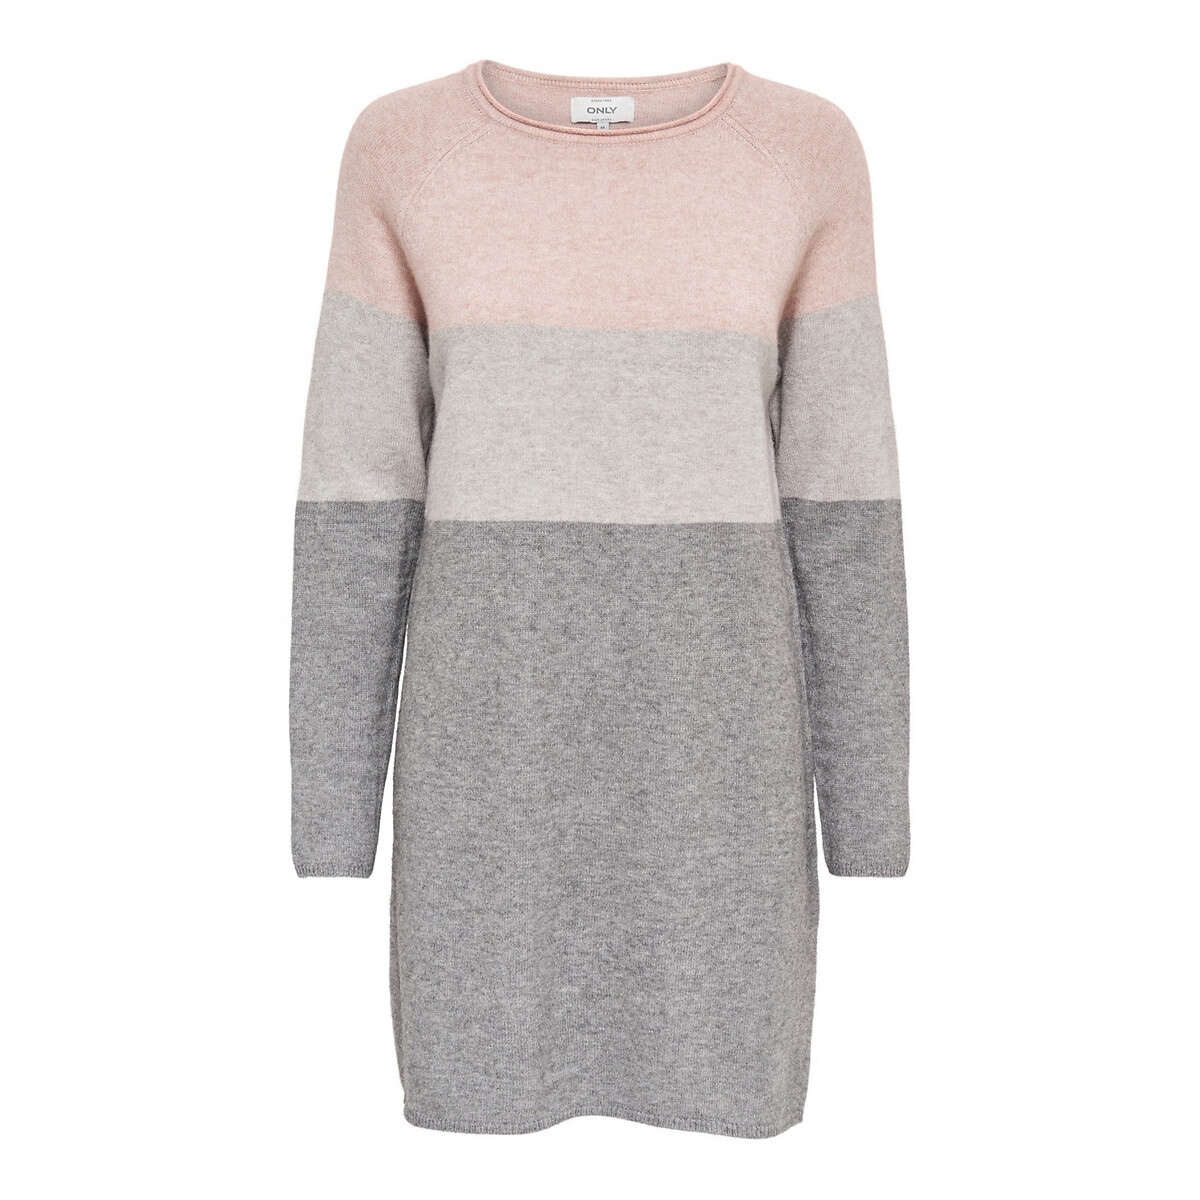 Платье-пуловер La Redoute Трехцветное из плотного трикотажа M розовый, размер M - фото 5